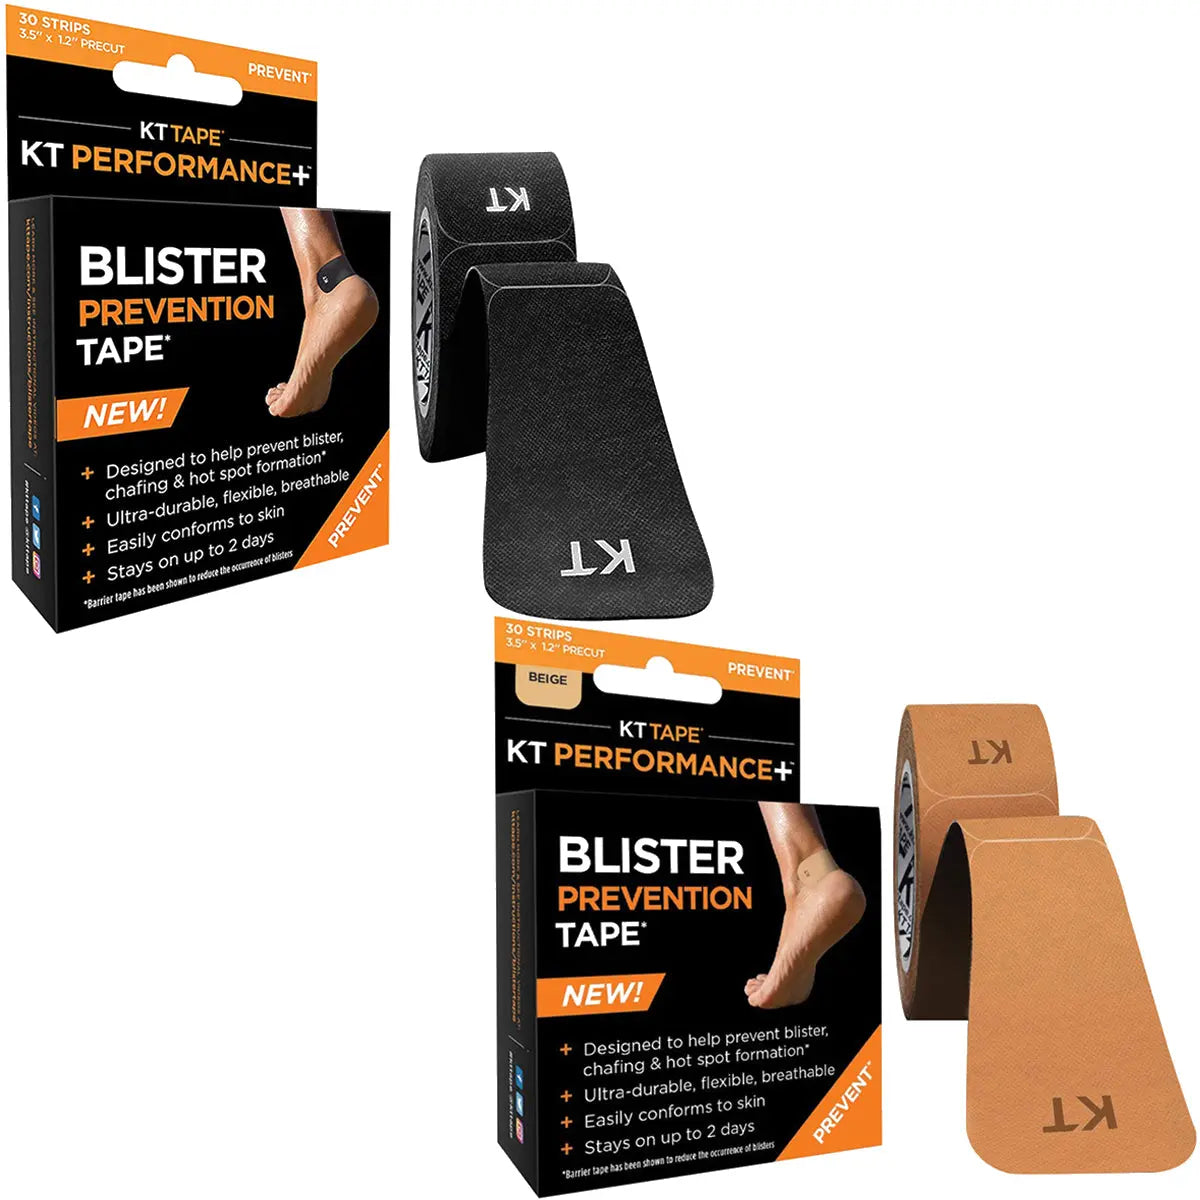 KT Tape Precut 3.5" Perfomance Blister Prevention Tape - 30 Strips KT Tape